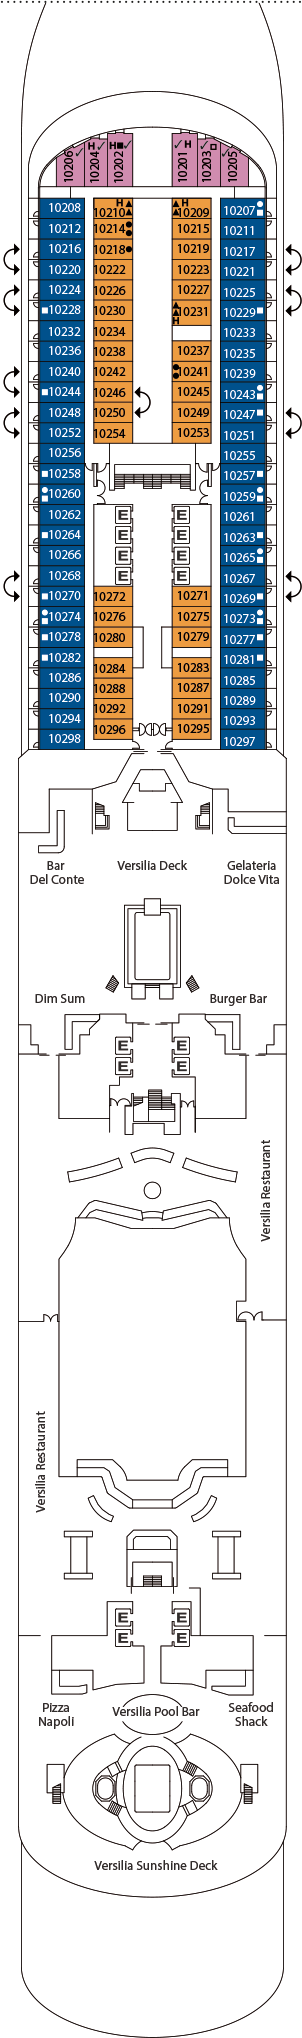 Costa Firenze - Deck Nr. 10 (Deck 10)